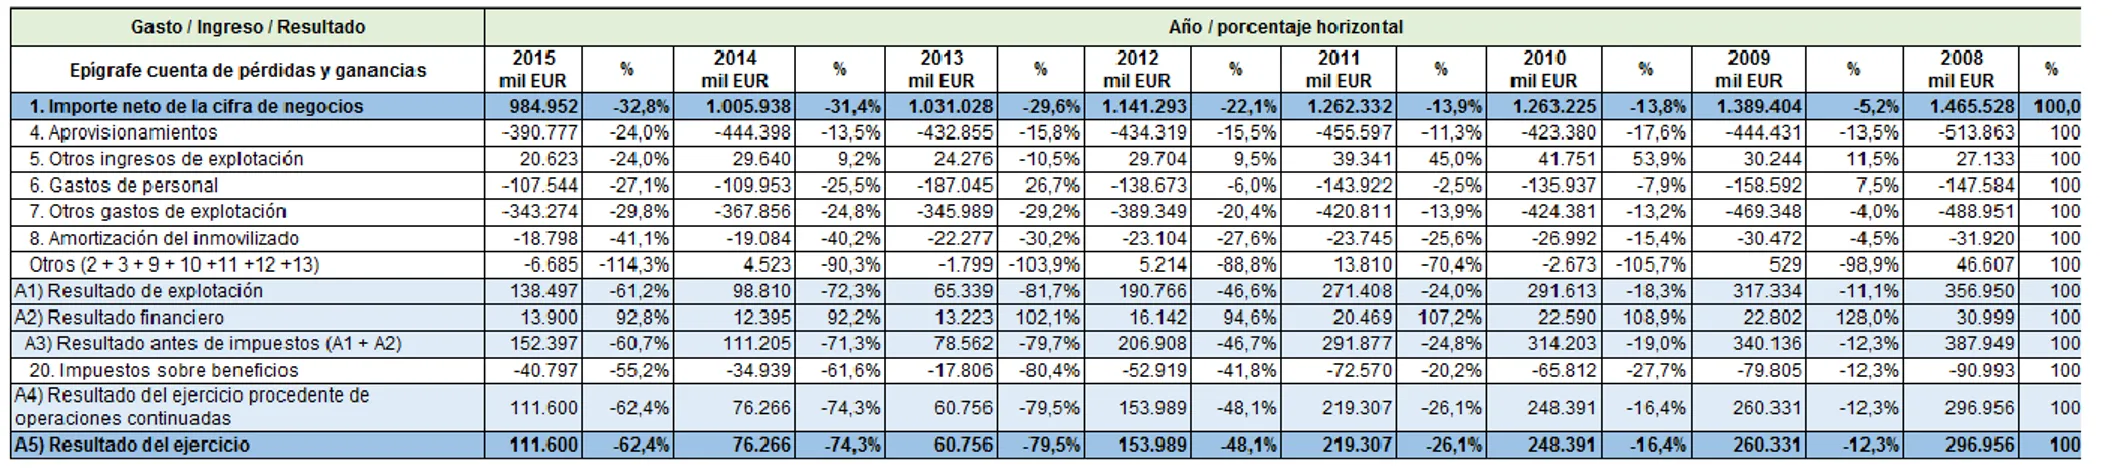 Tabla 6. Porcentajes horizontales abreviados de la cuenta de resultados de Danone (2008-2015)